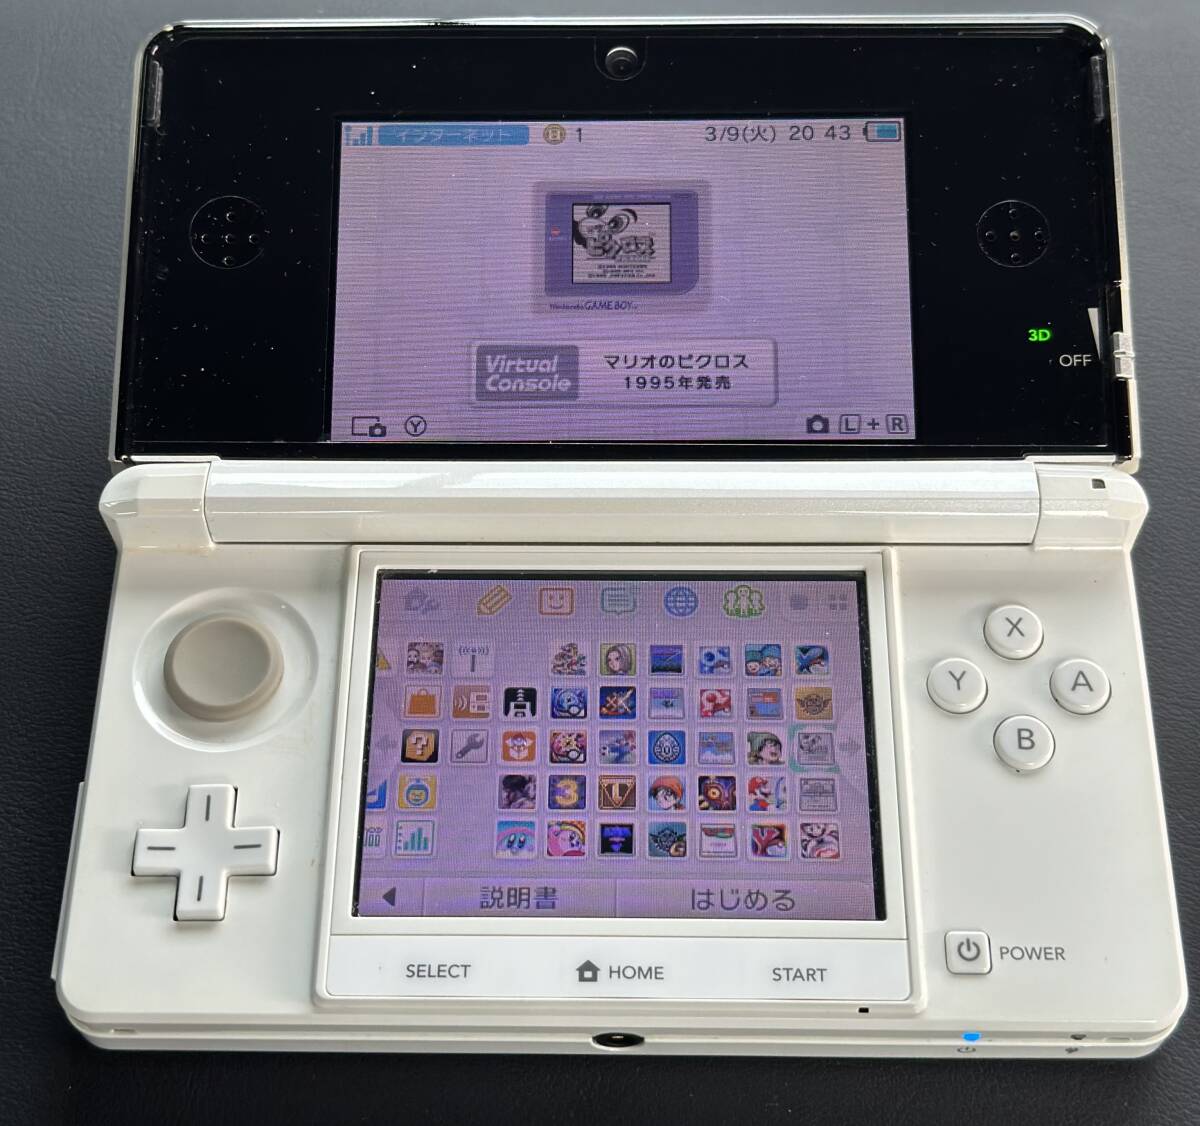 ニンテンドー 3DS ホワイト - ポケモンバンク・ポケムーバー + VC 8作品 + その他24作品  ダウンロード済みの画像1